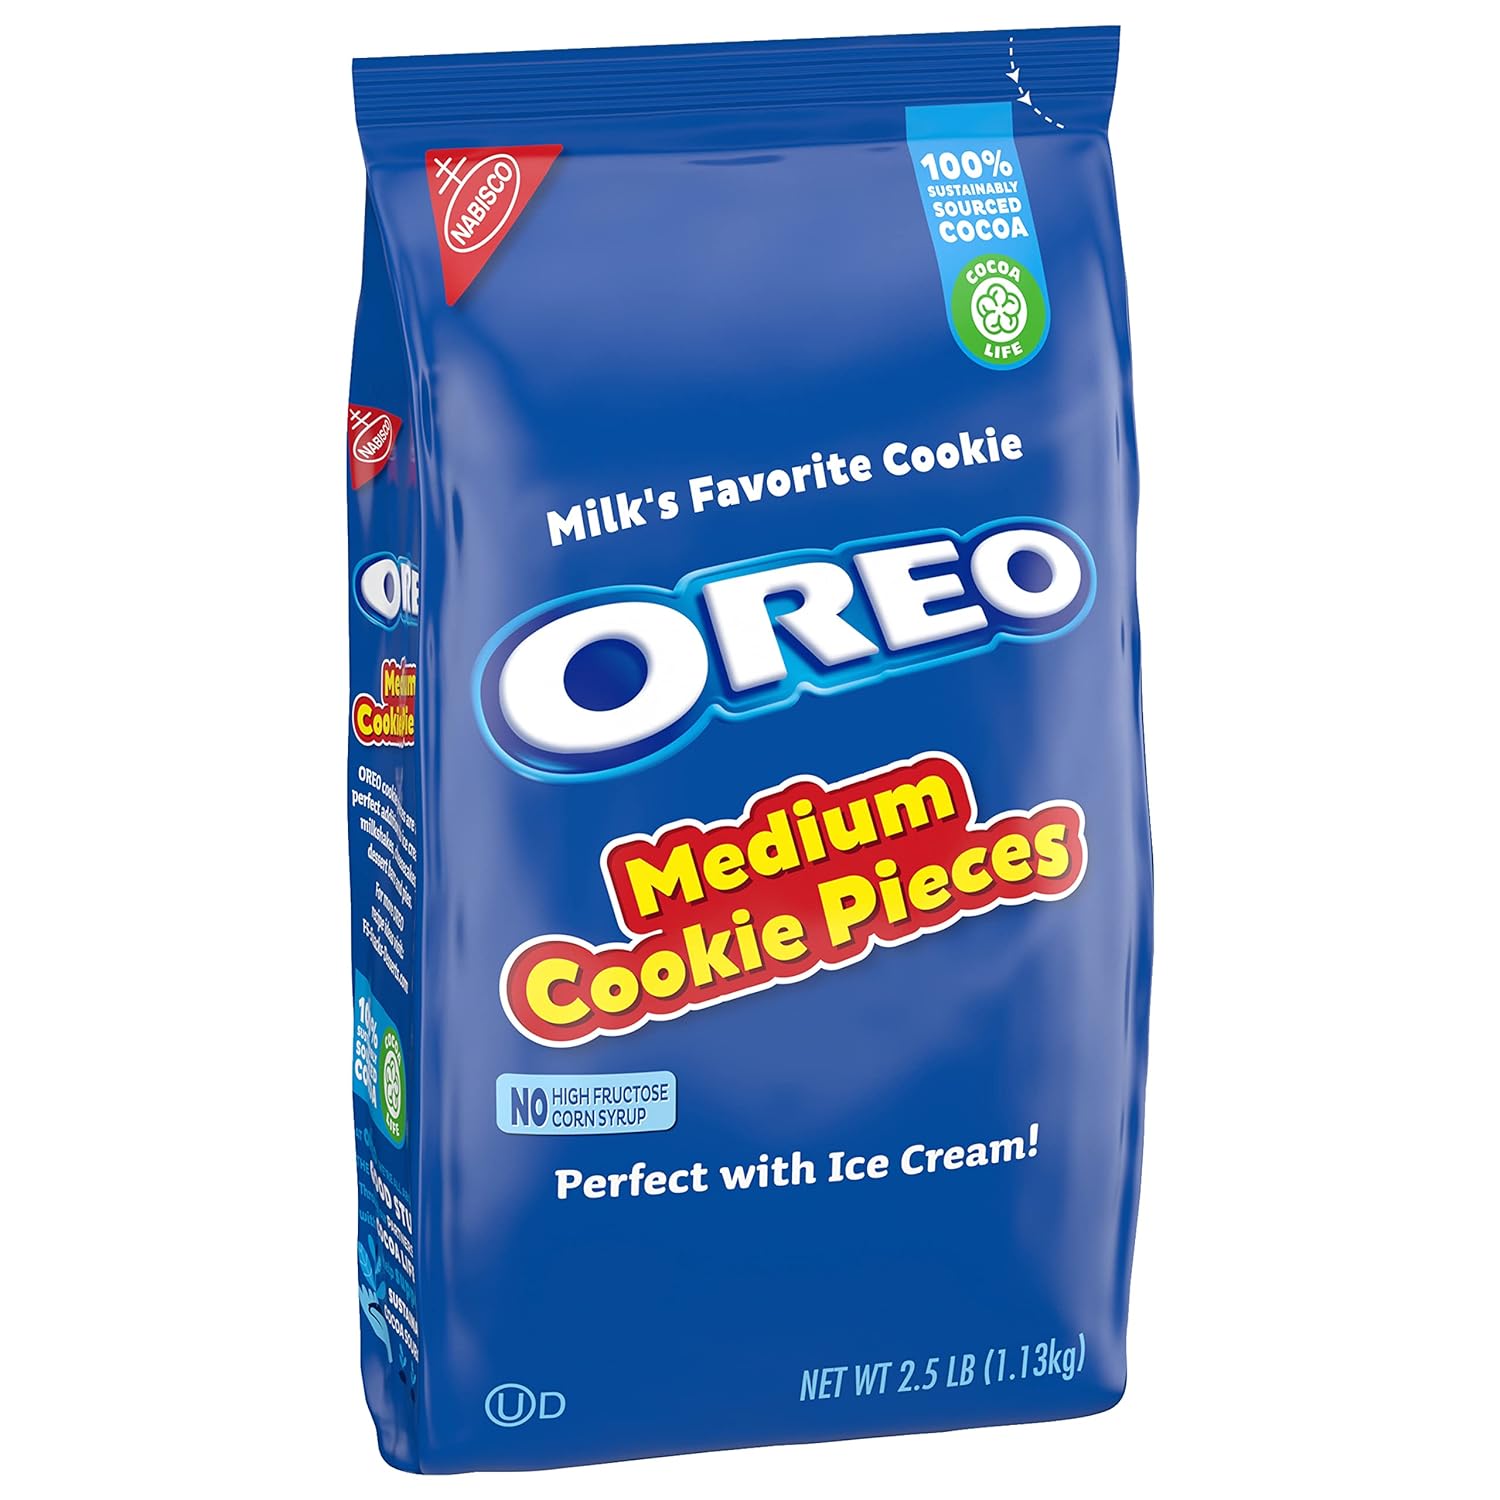 Oreo Medium Cookie Pieces 2.5lb bag